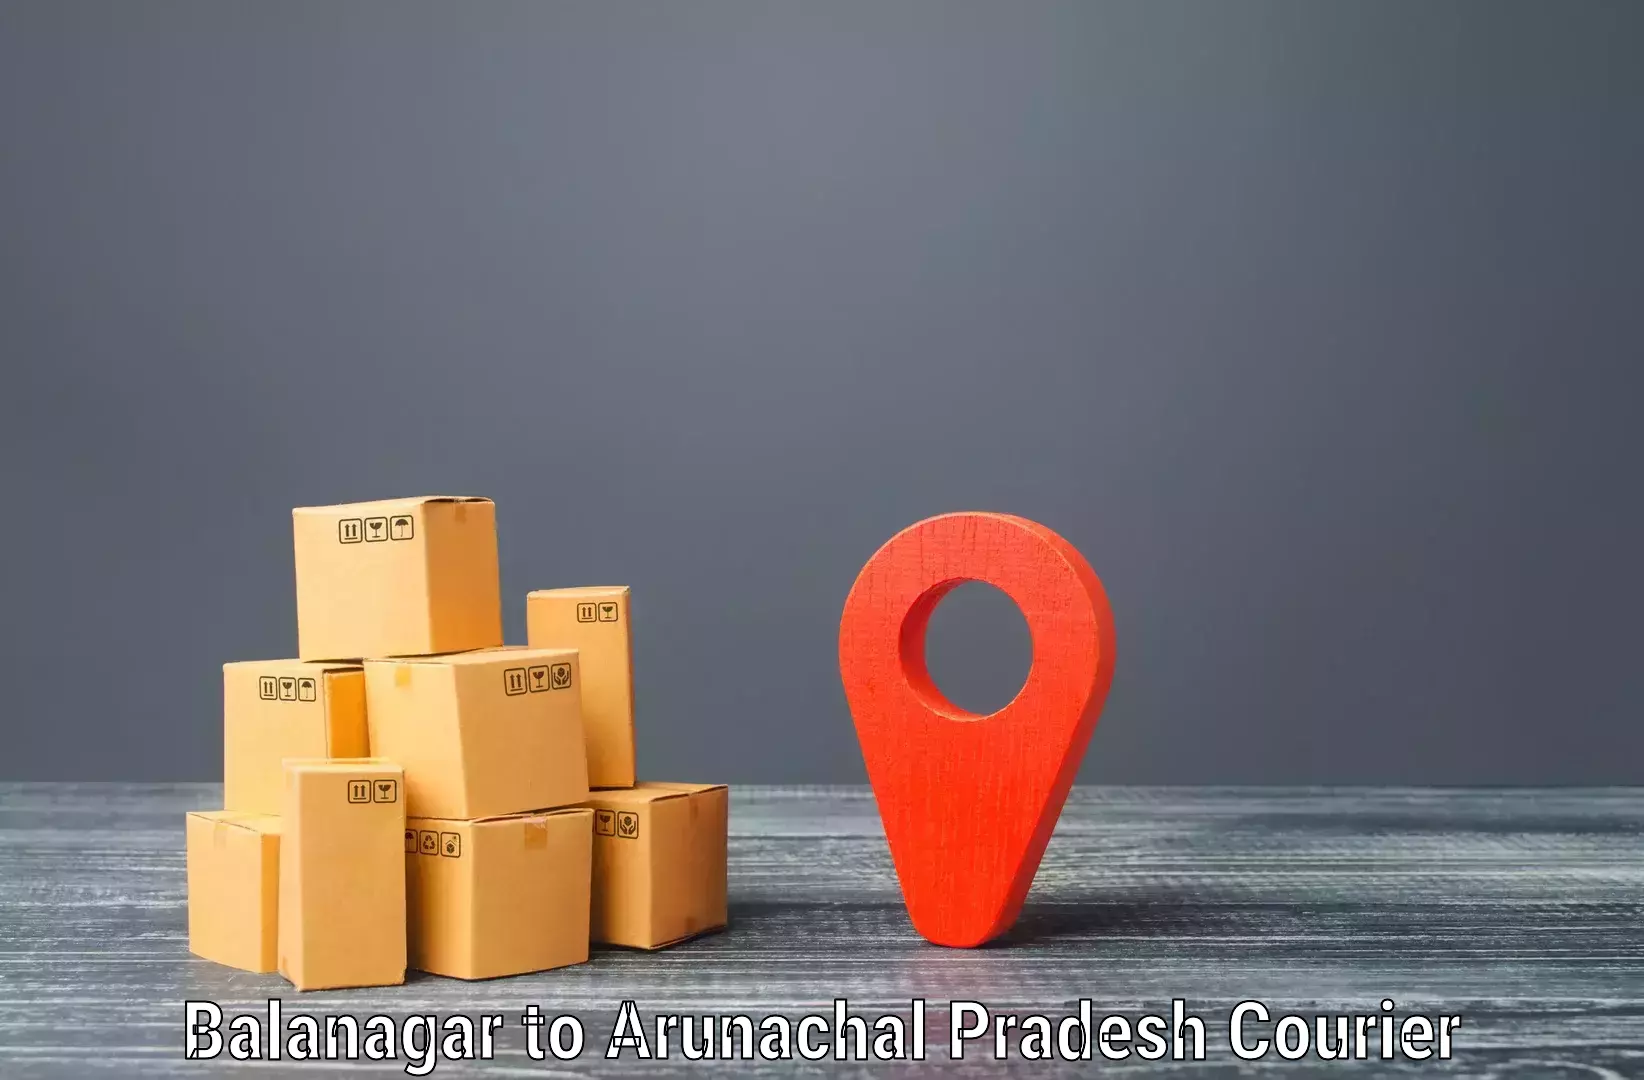 Premium courier services Balanagar to Nirjuli